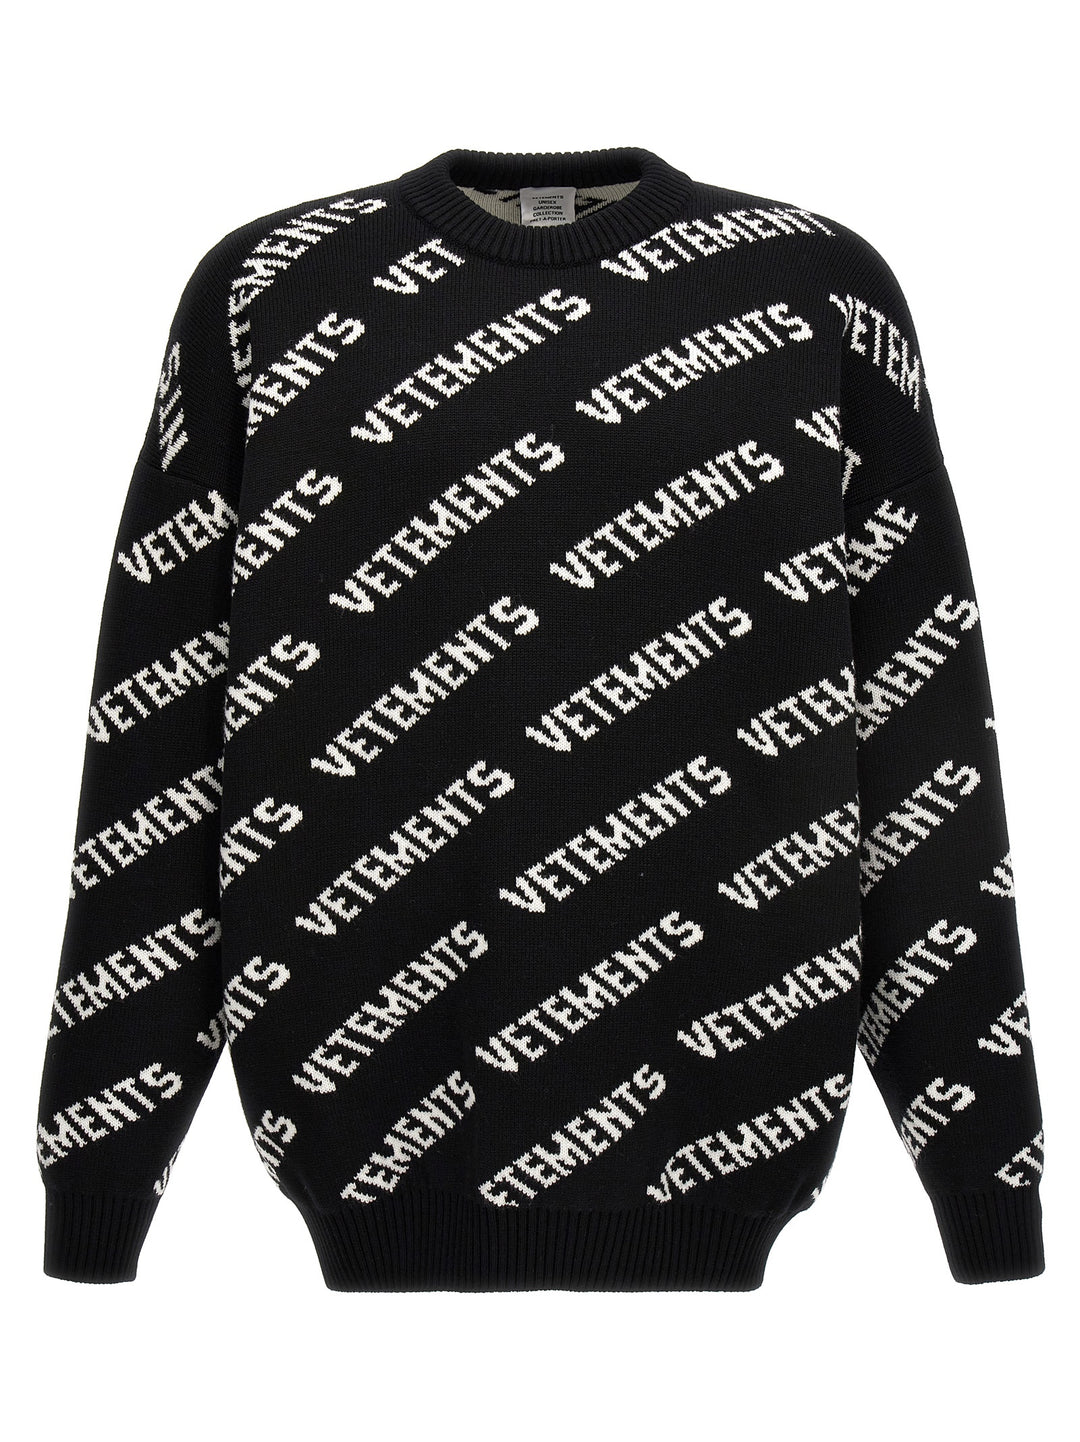 Monogram Sweater Maglioni Bianco/Nero